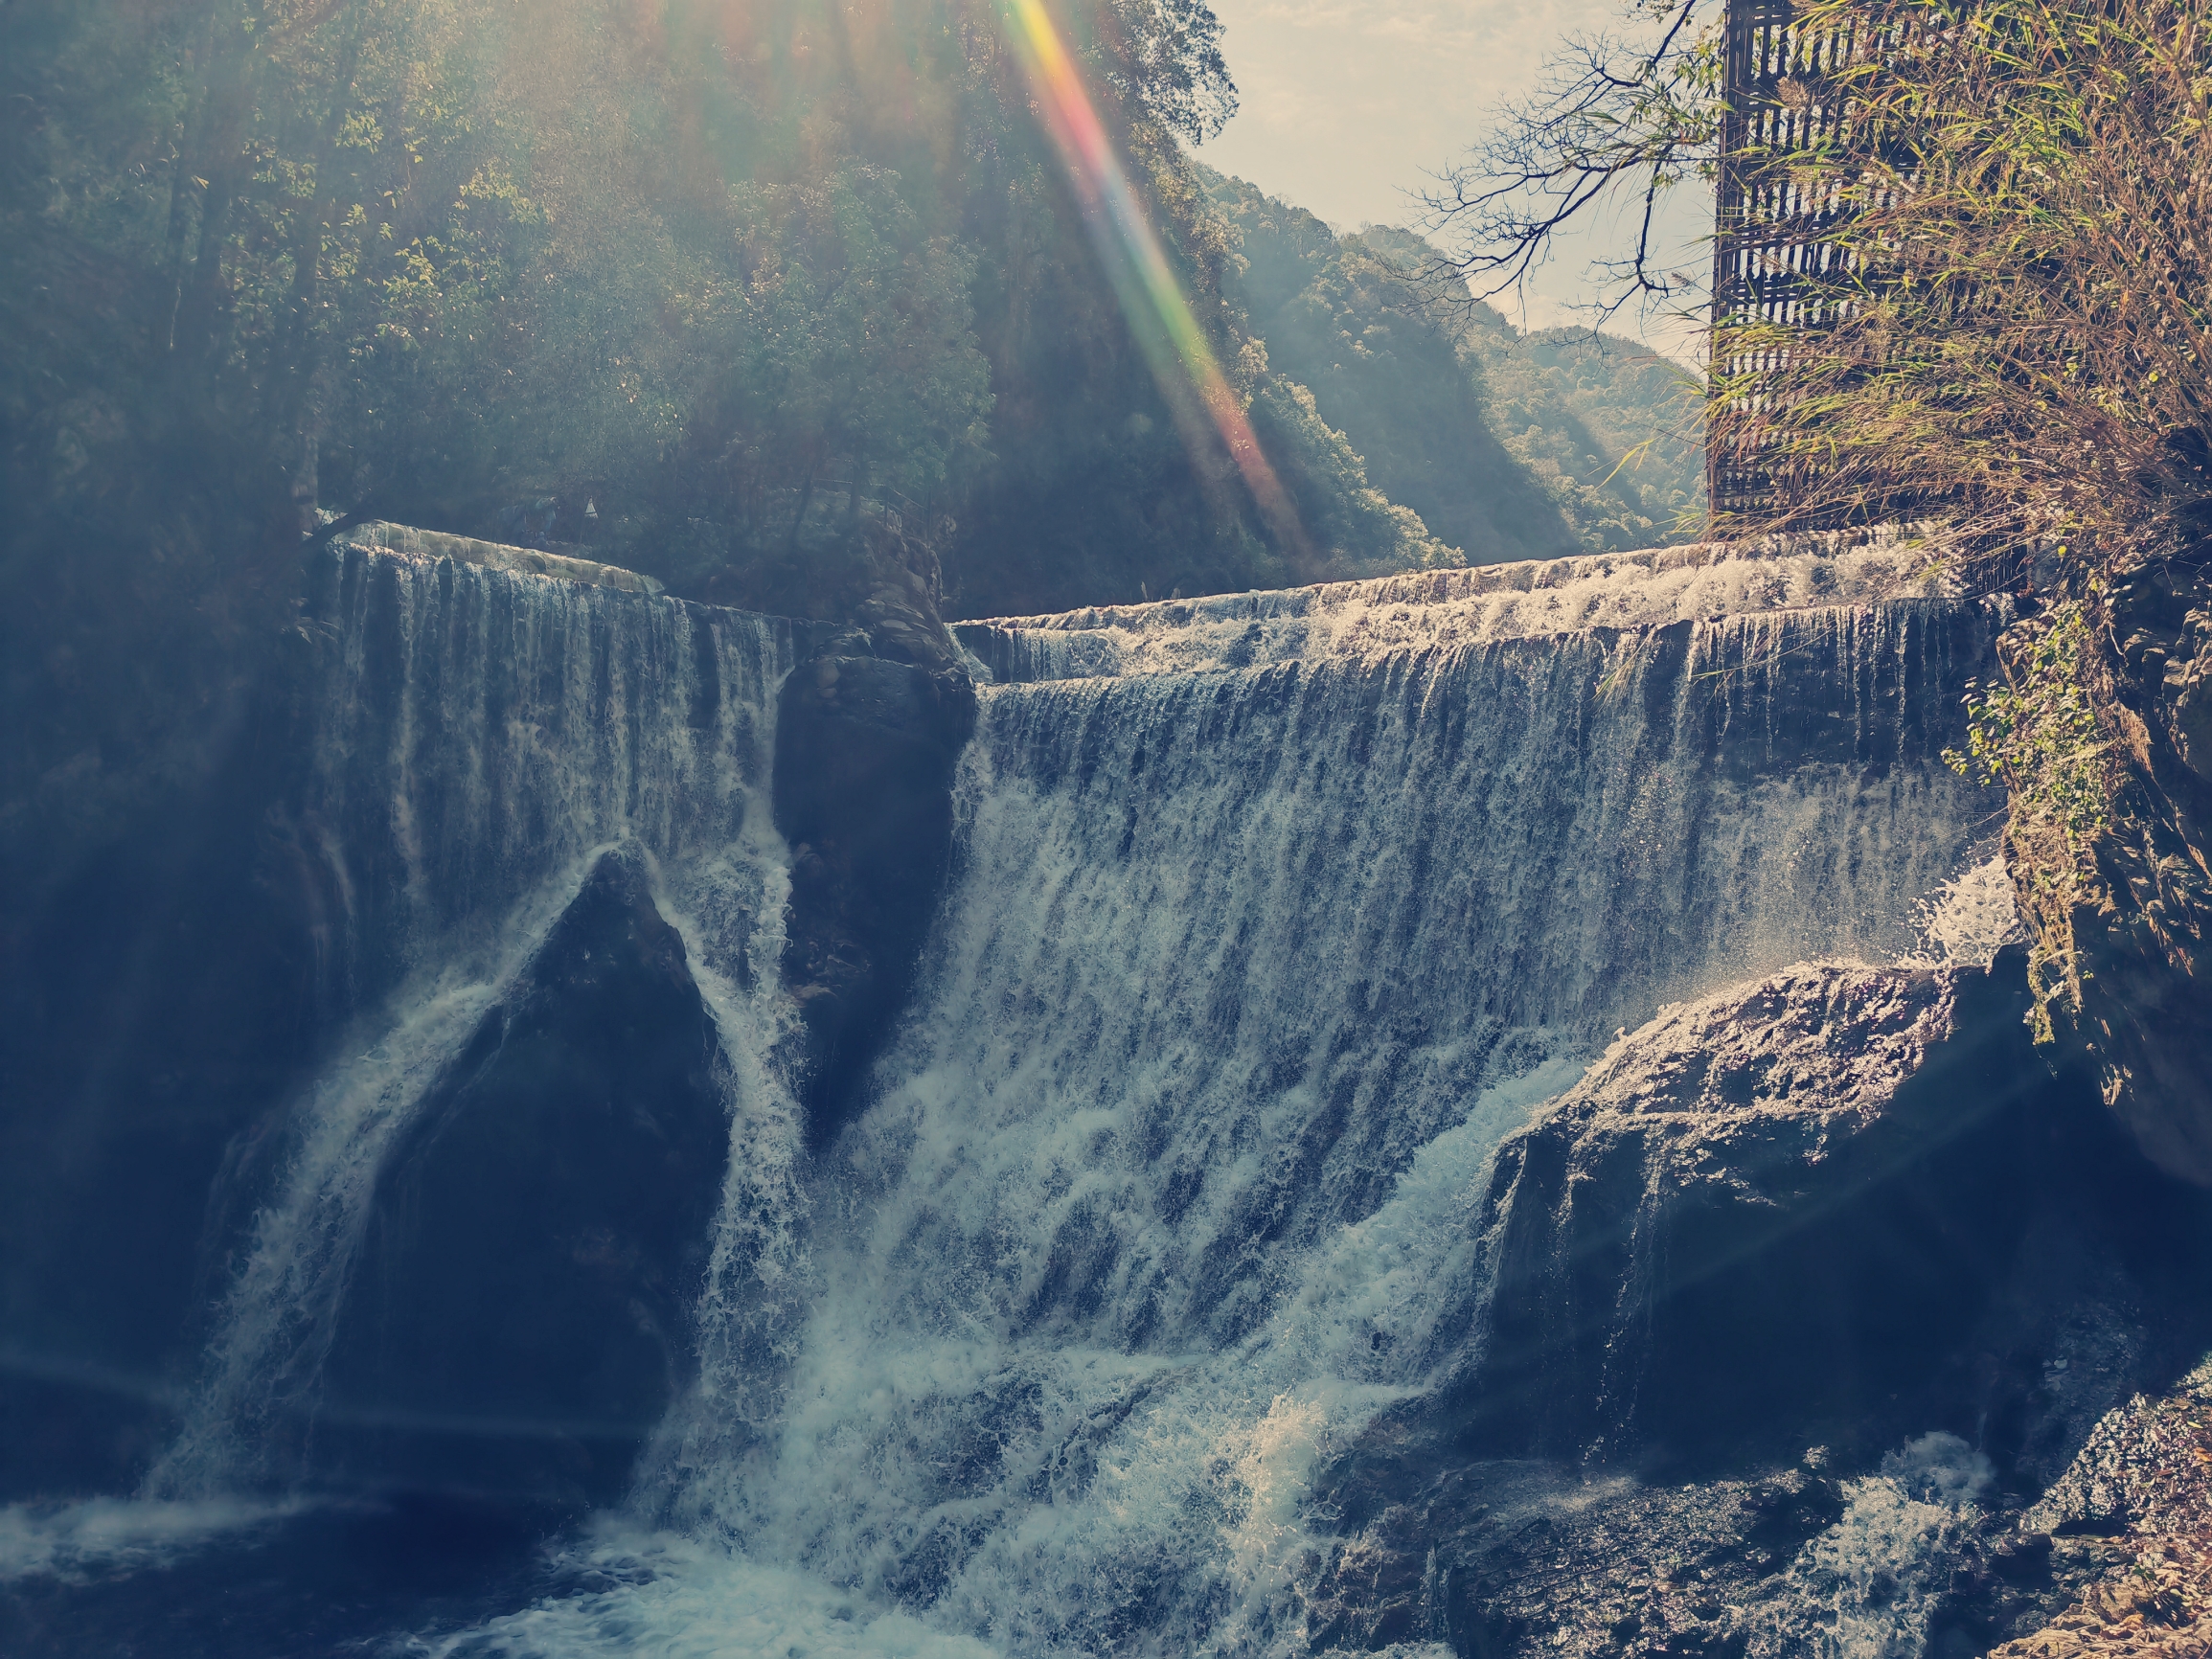 螺髻九十九里温泉瀑布亚洲第一大网红温泉瀑布。